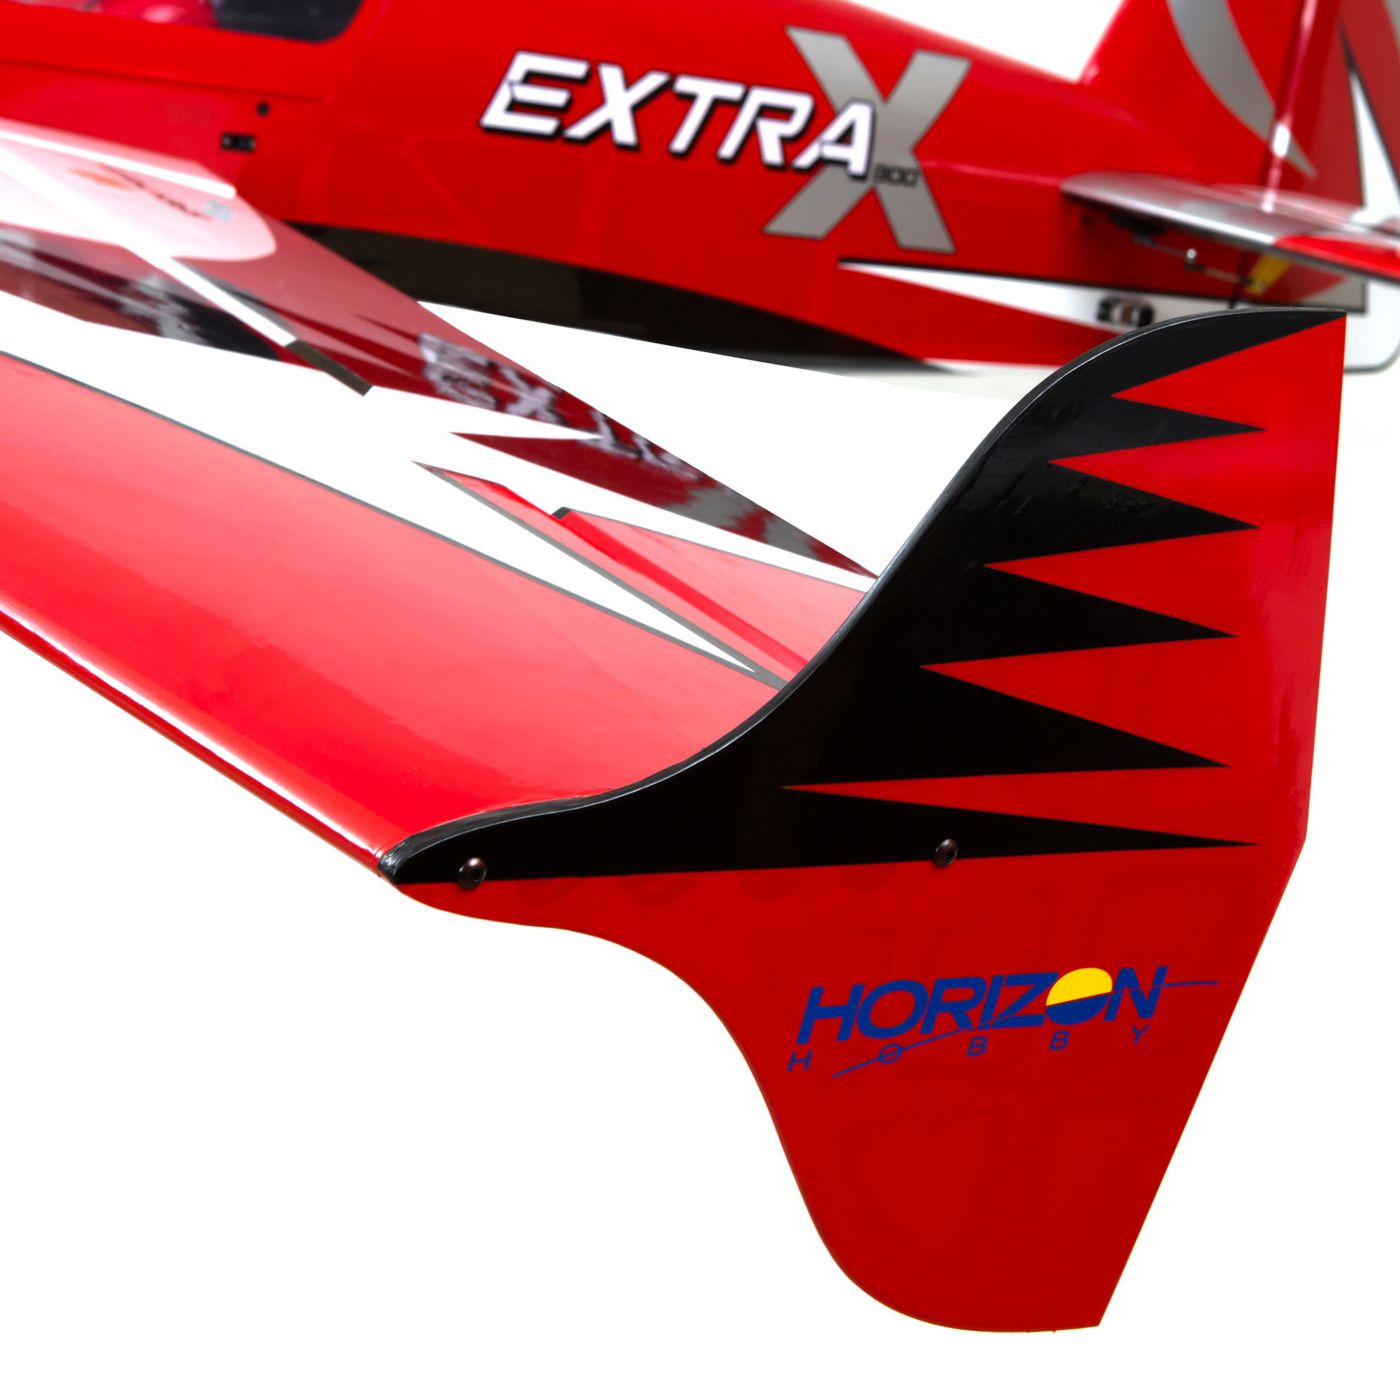 Extra 300X hangar 9